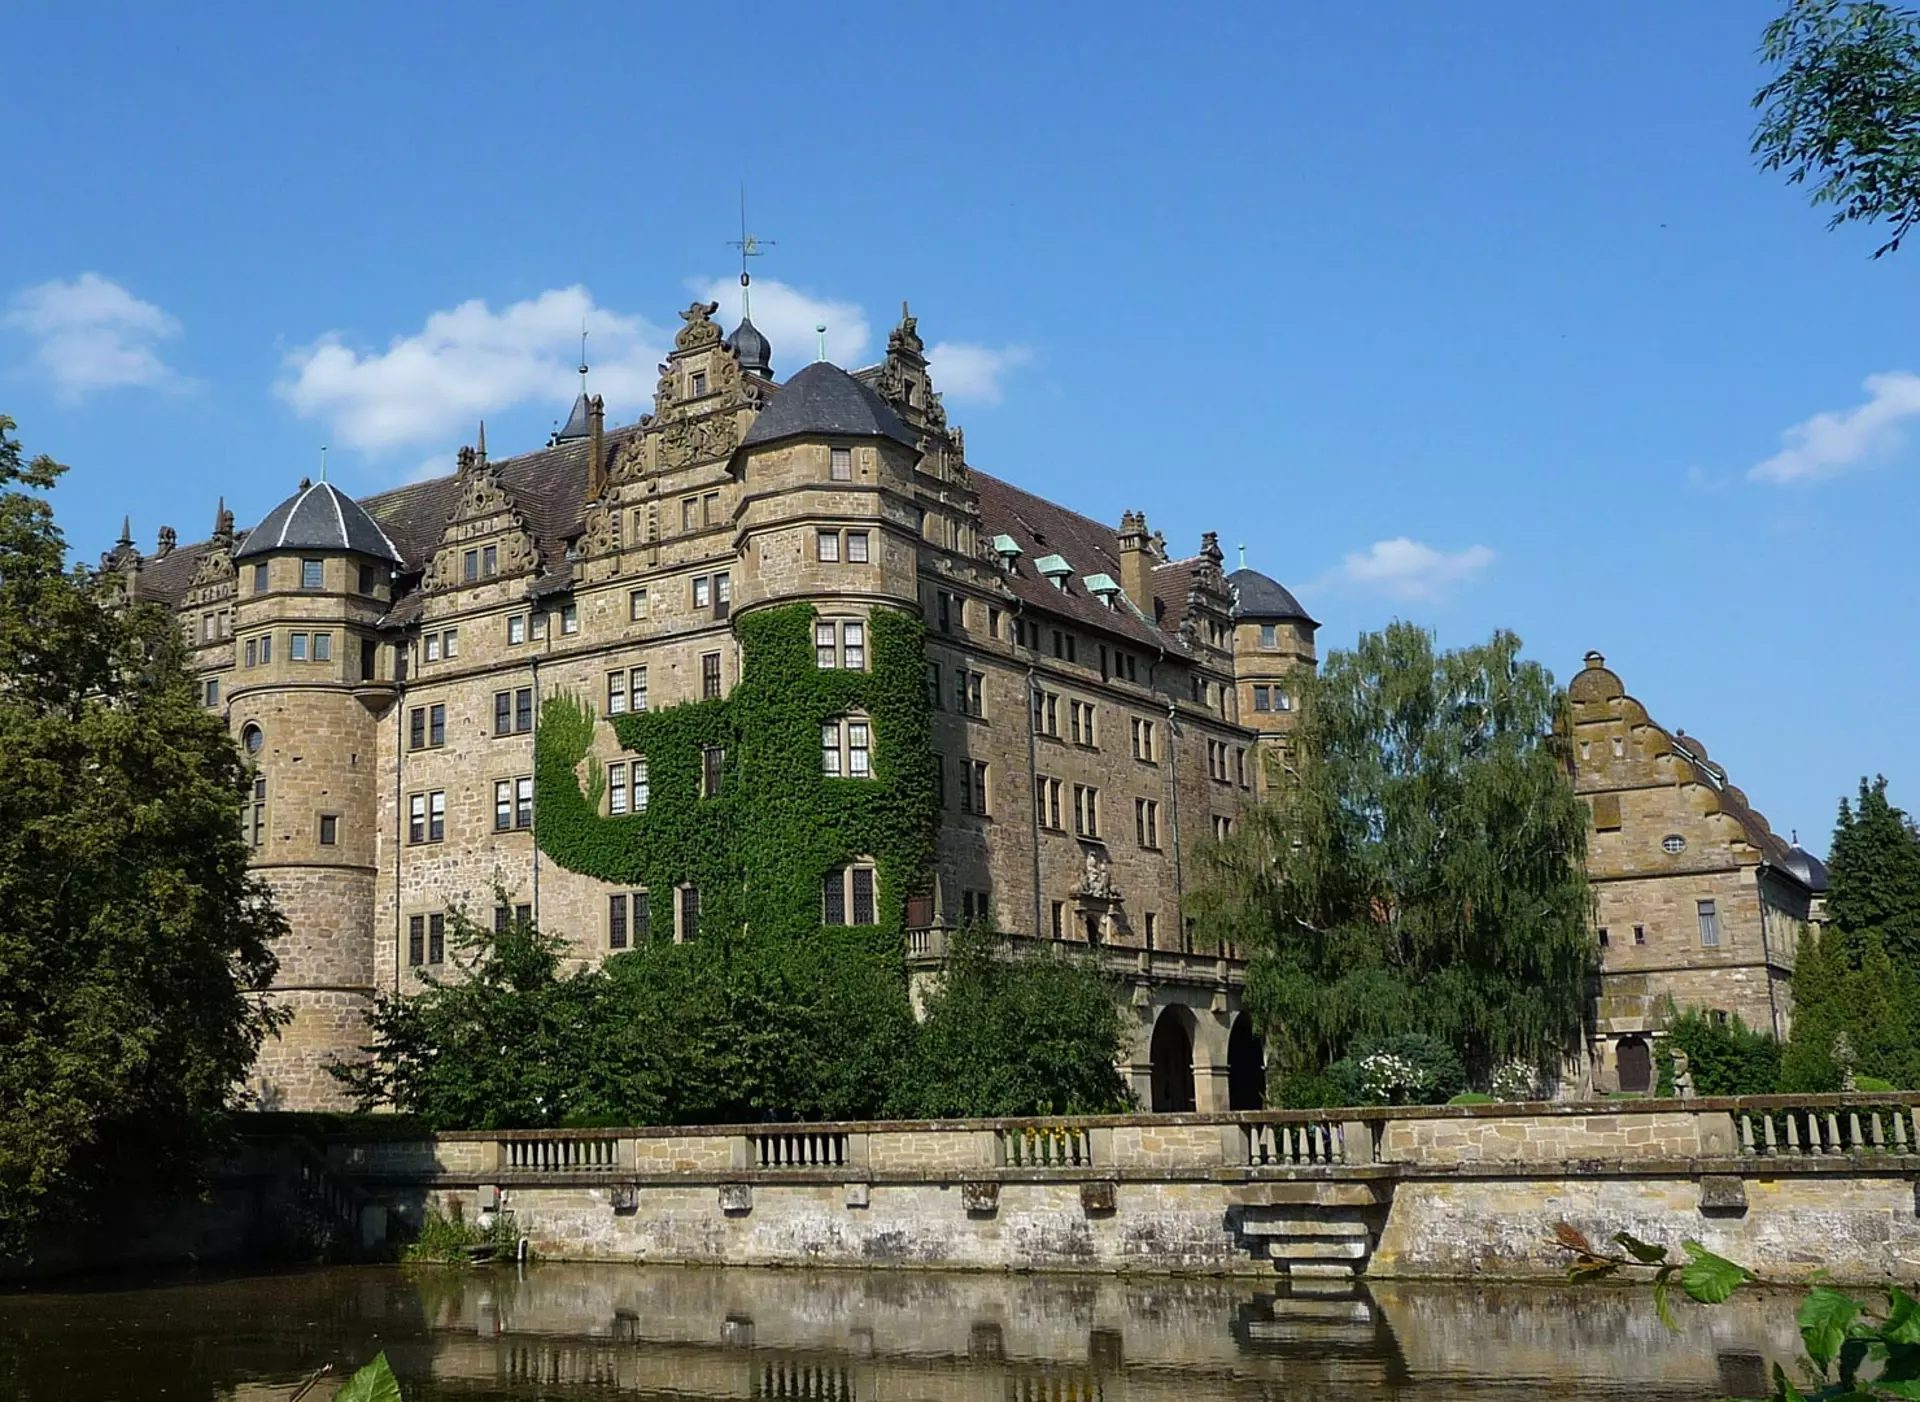 im Urlaub in Hohenlohe das Renaissance-Schloss Neuenstein besuchen, das als Wasserburg in Neuenstein gebaut wurde